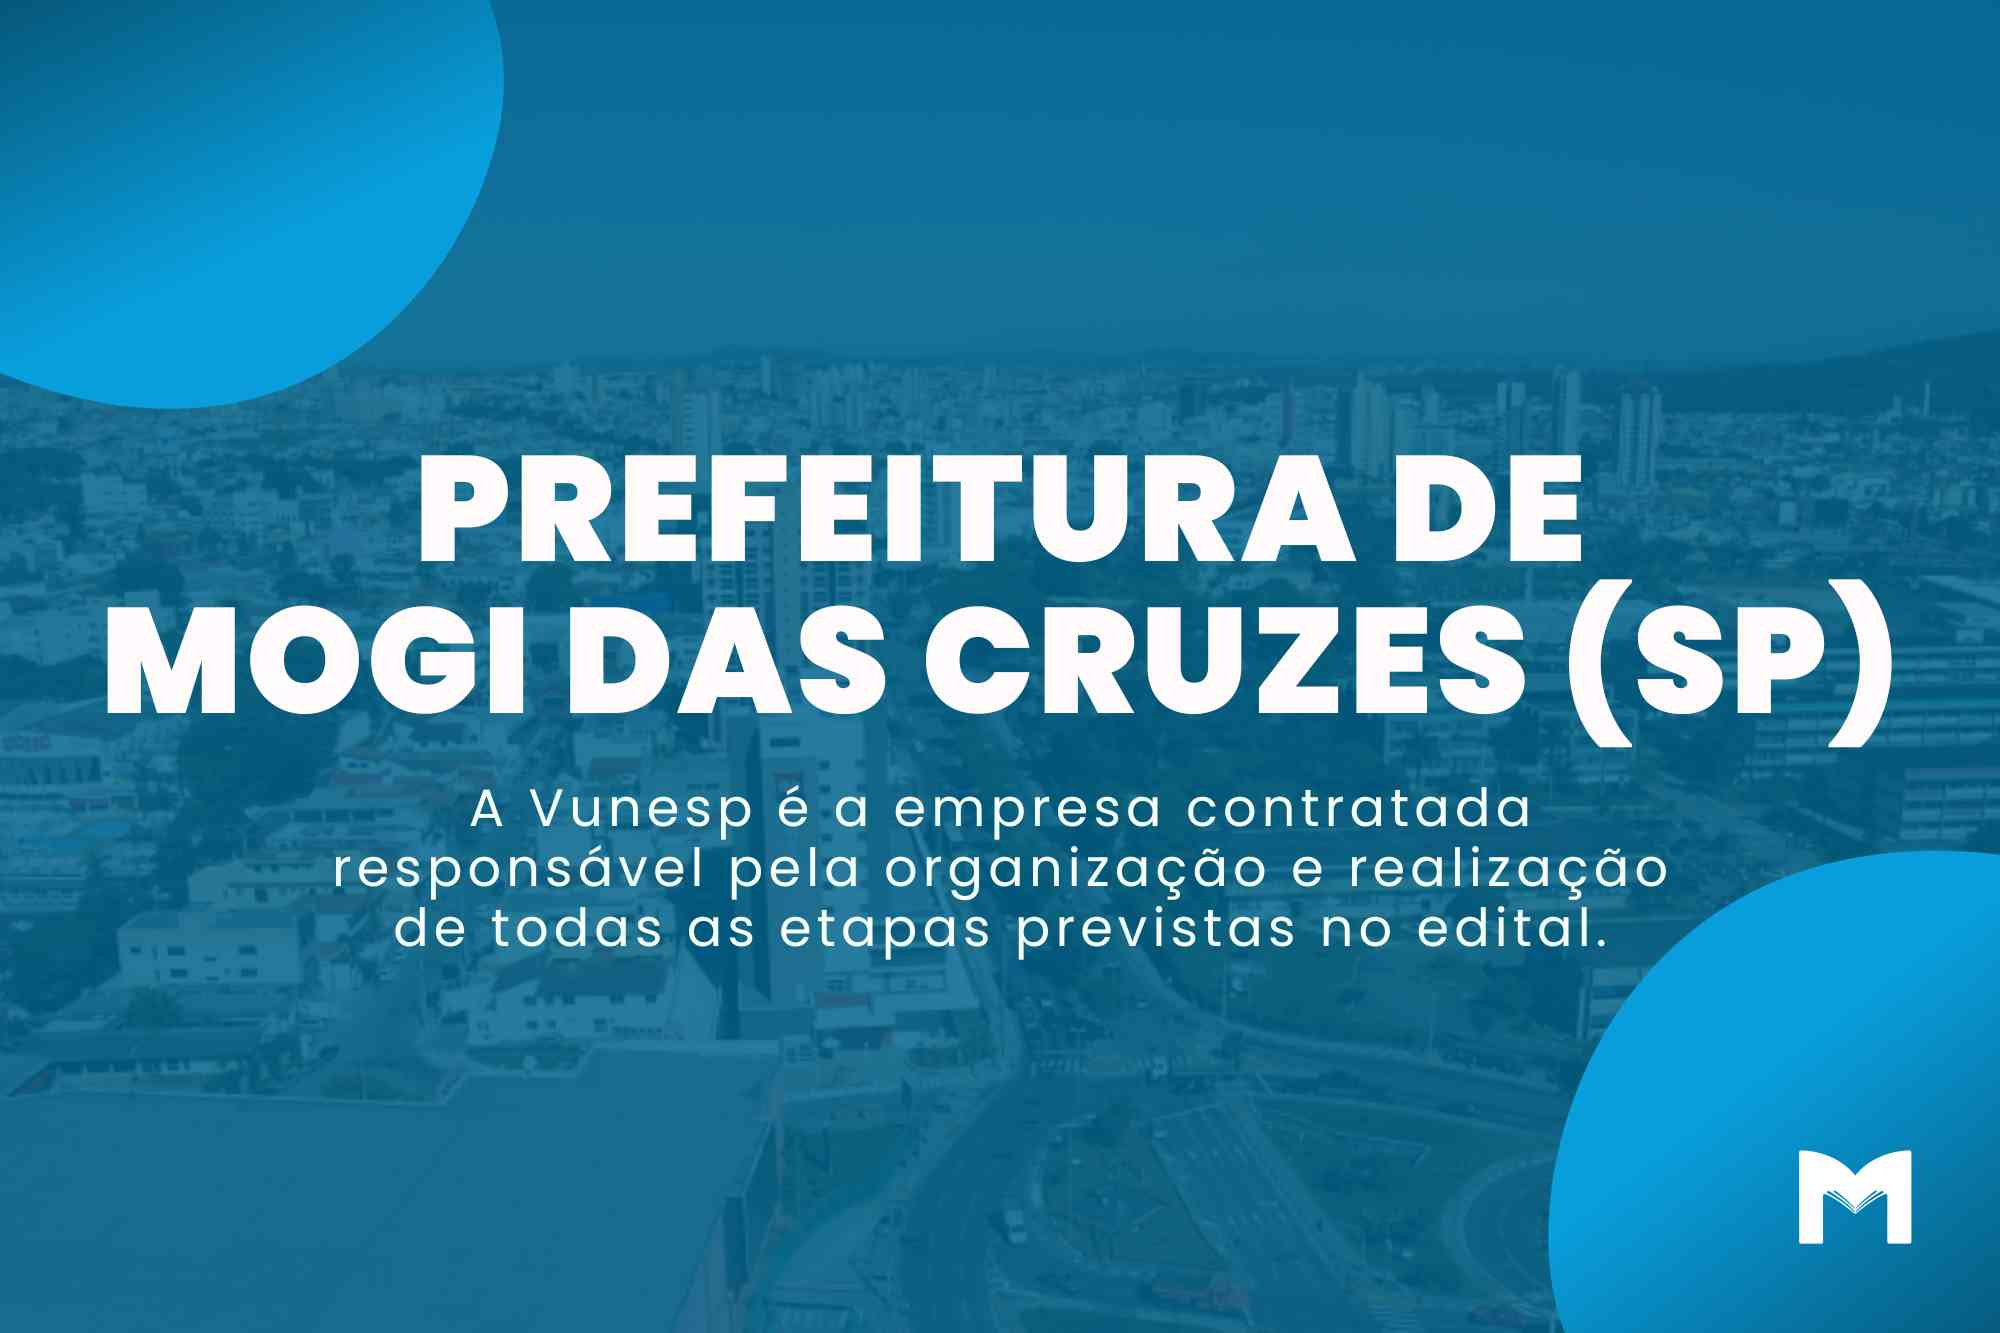 Prefeitura de Mogi das Cruzes SP: Edital tem salários de até R$ 9,6 mil!